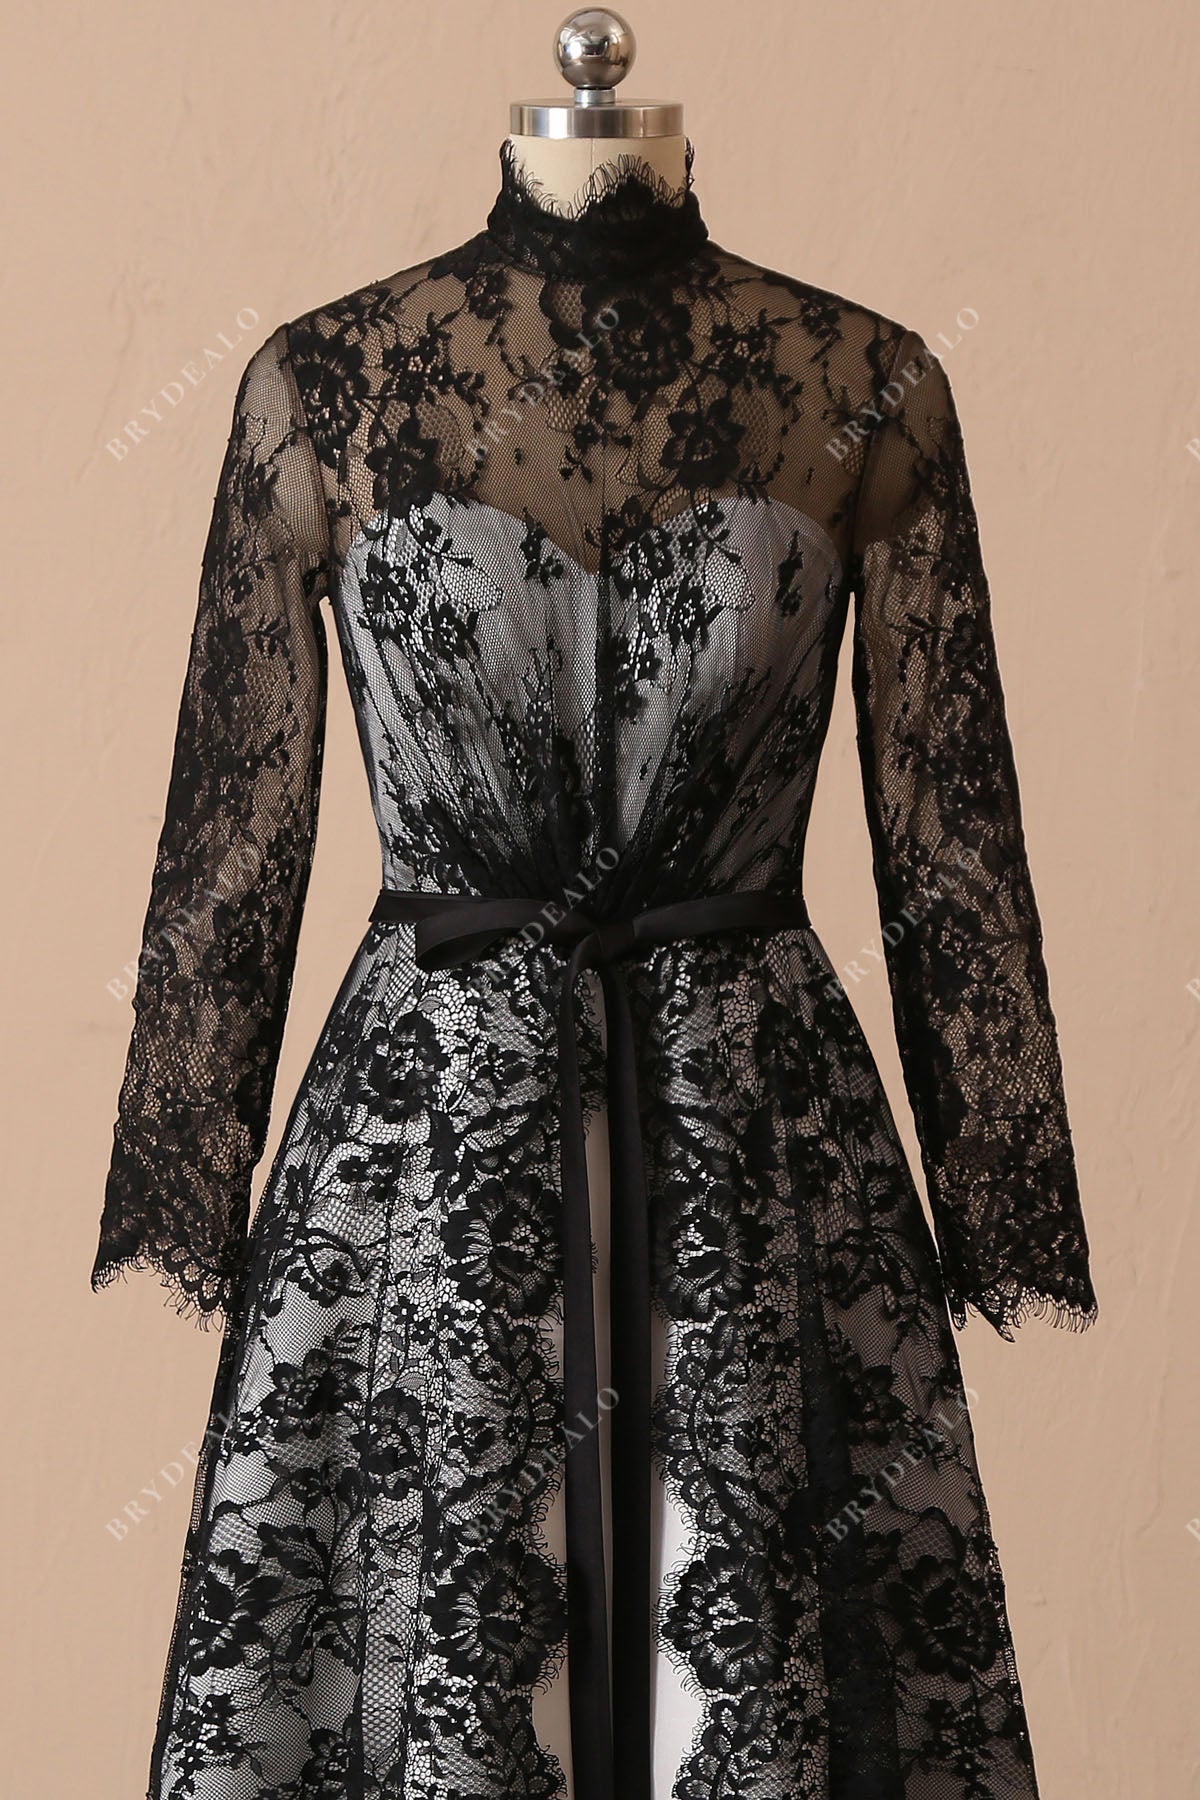 sheer long sleeves black lace chic bridal dress